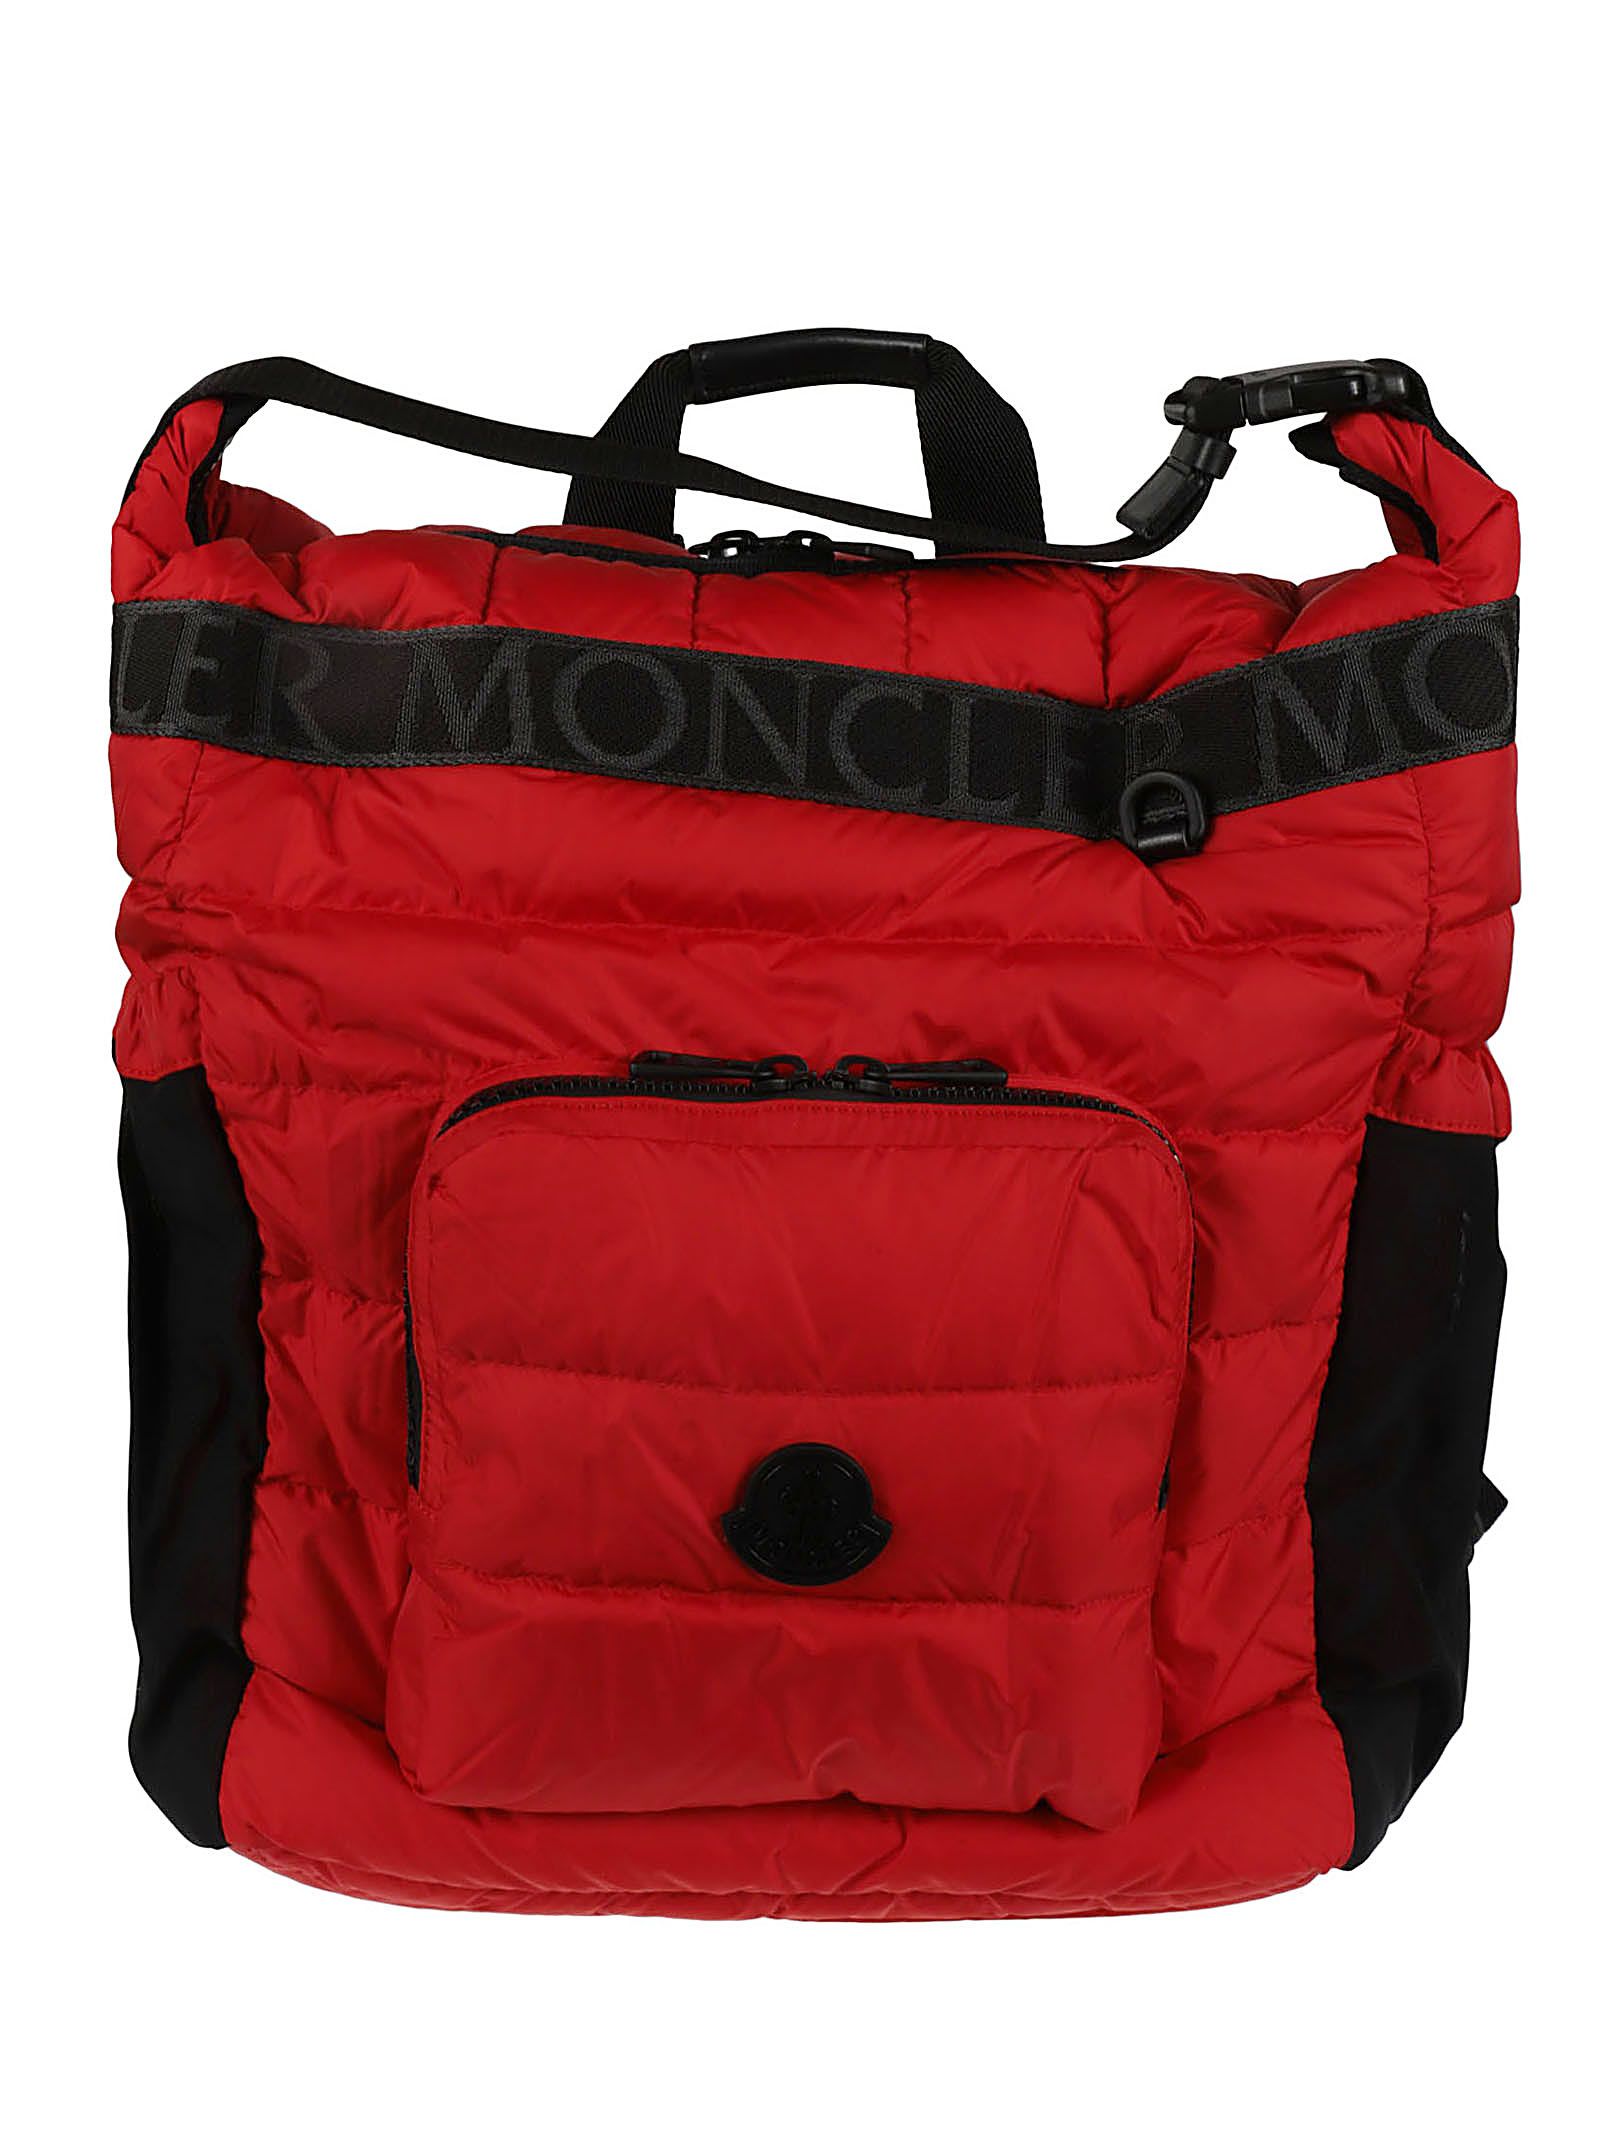 Moncler Antartika Duffle Bag